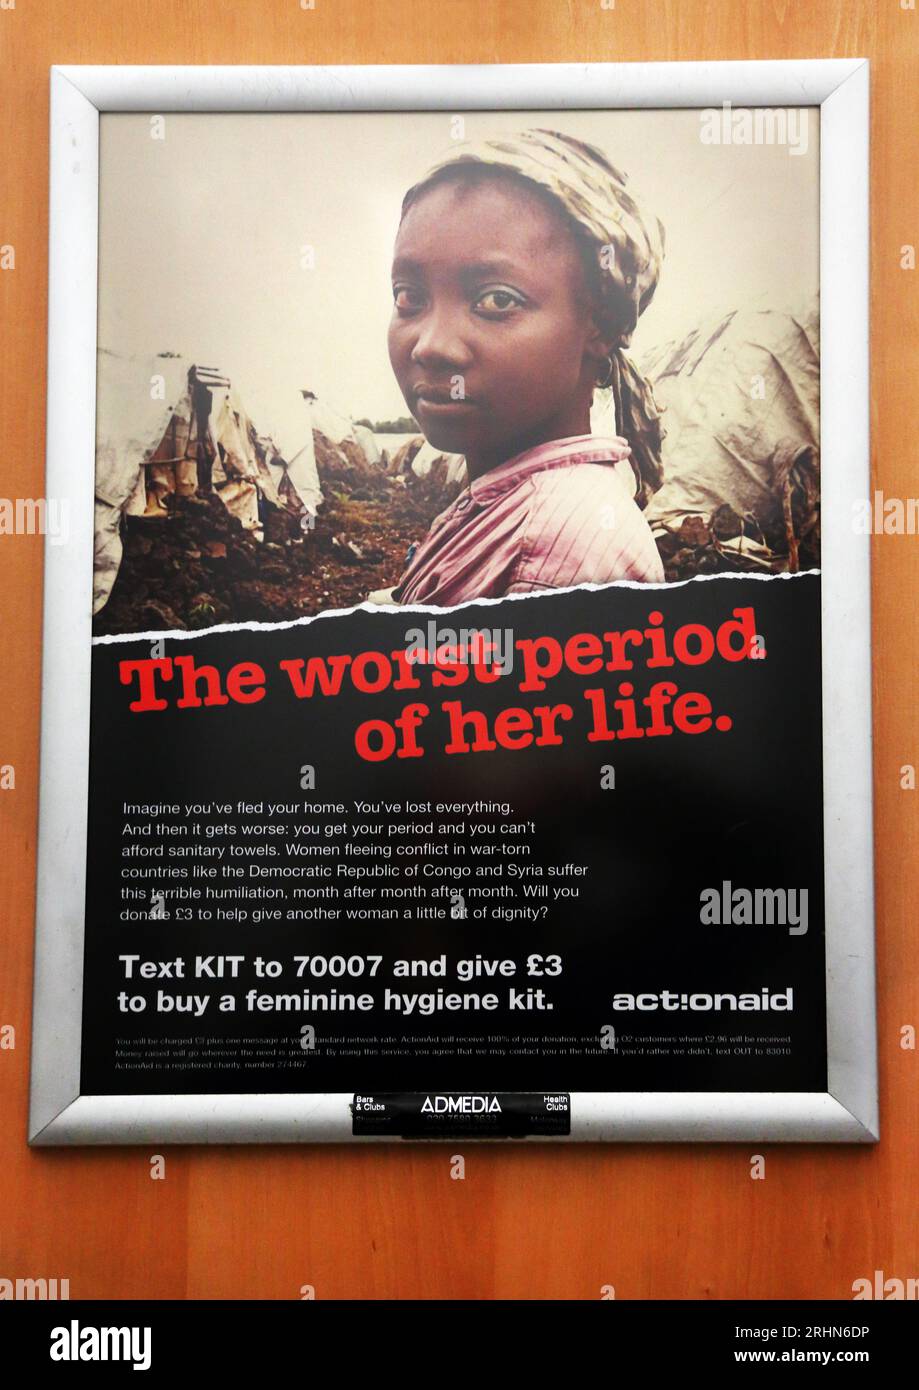 Publicité caritative ActionAid demandant un don pour des kits d'hygiène féminine pour les pays déchirés par la guerre dans Service Station Toilet England Banque D'Images